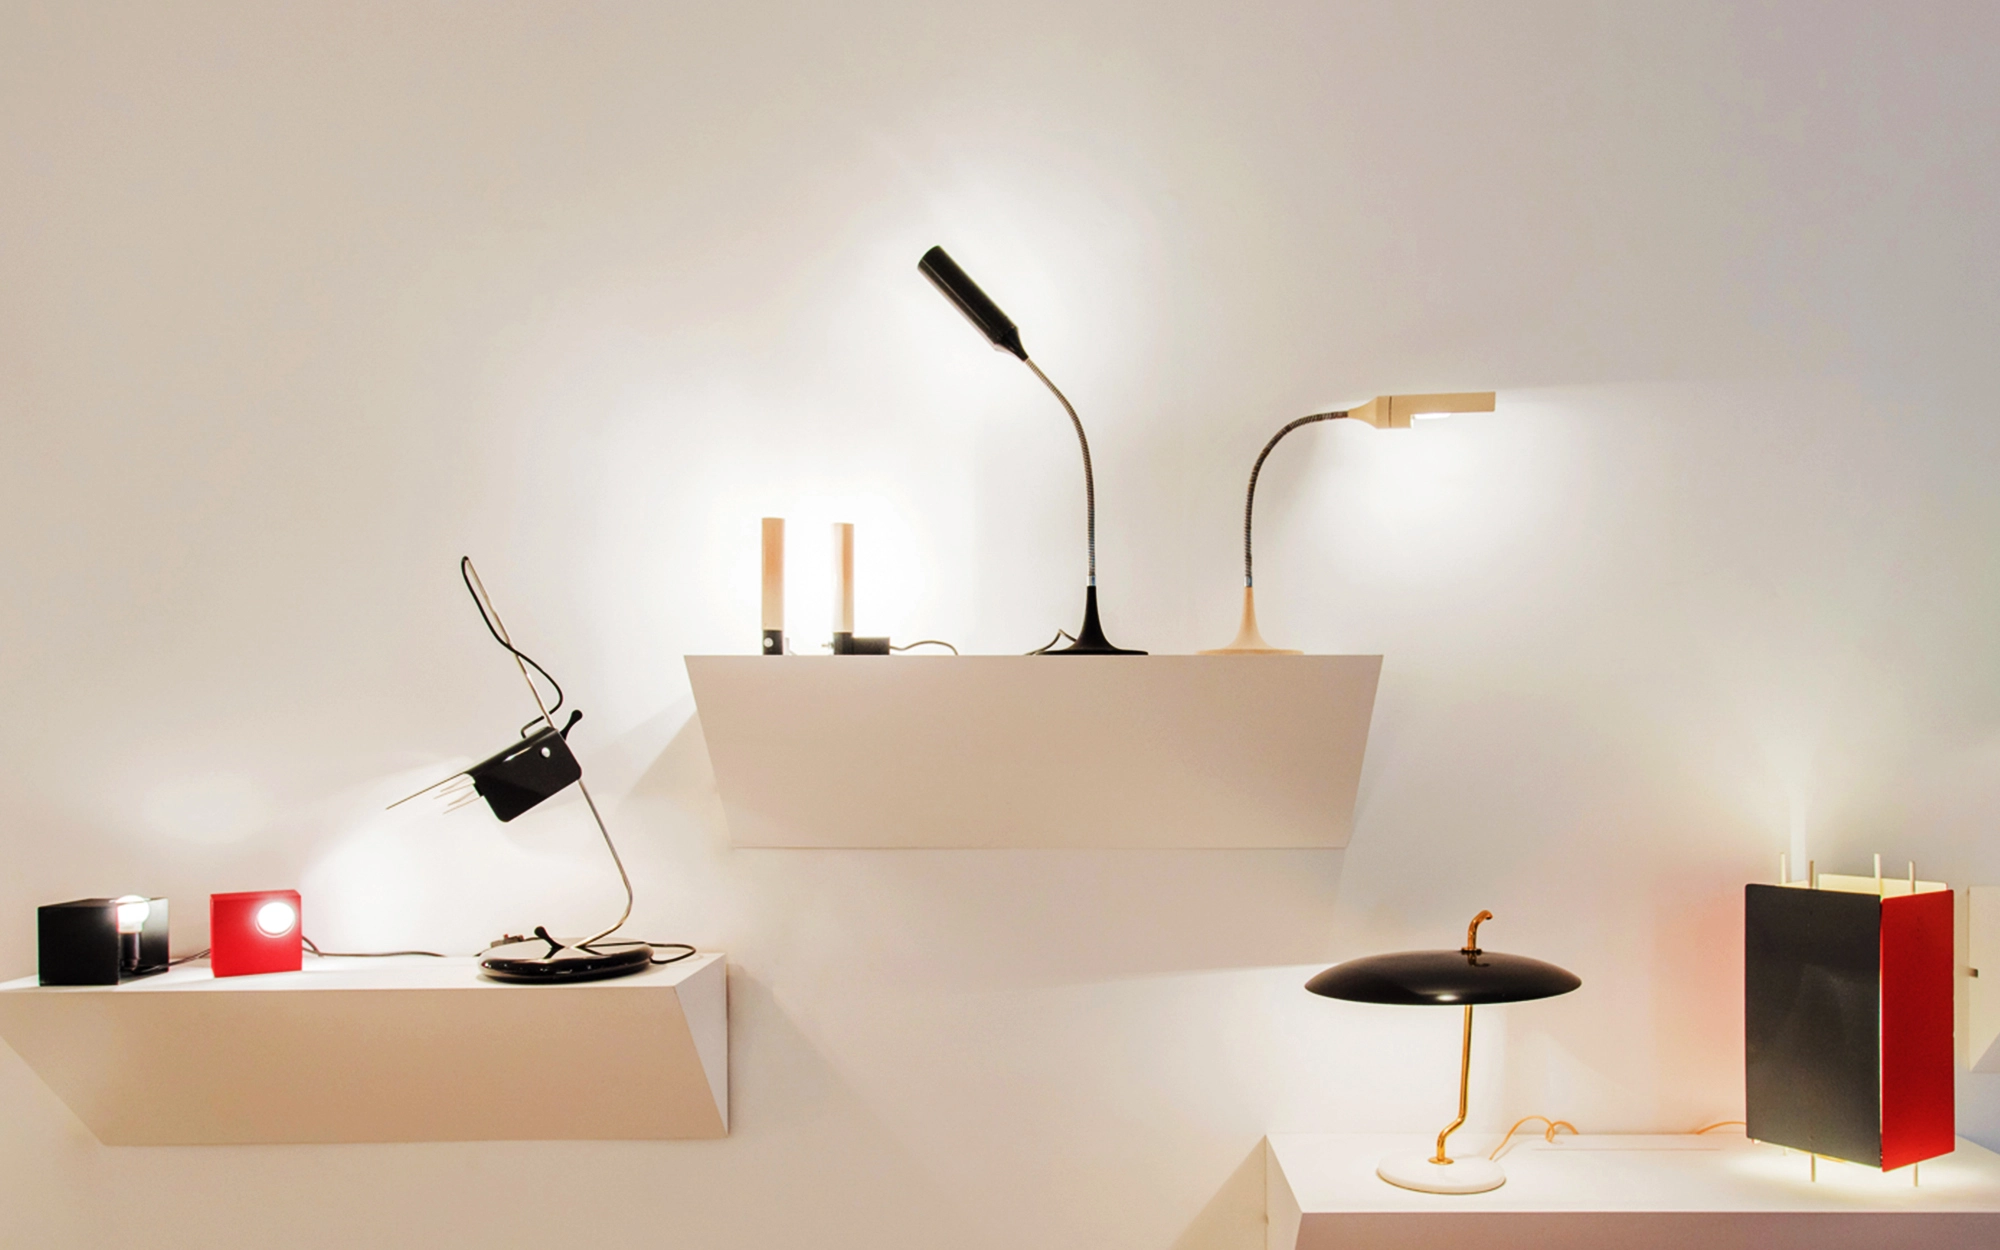 595 - Gino Sarfatti - Table light - Galerie kreo